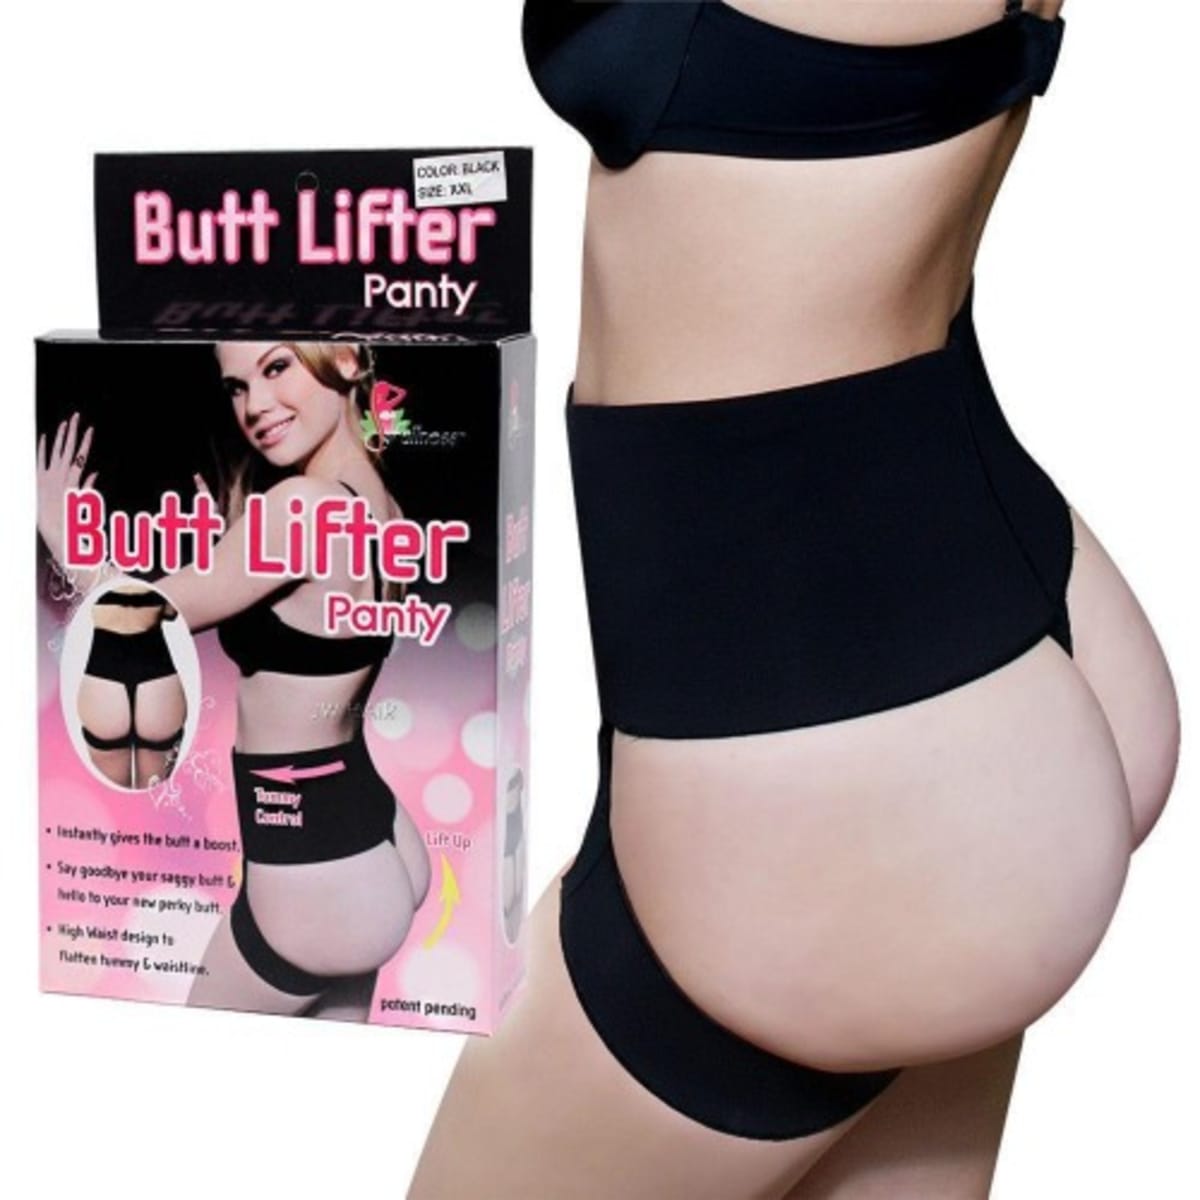 Butt Lifter Panties Butt Enhancer Underwear Booty Lifter Butt